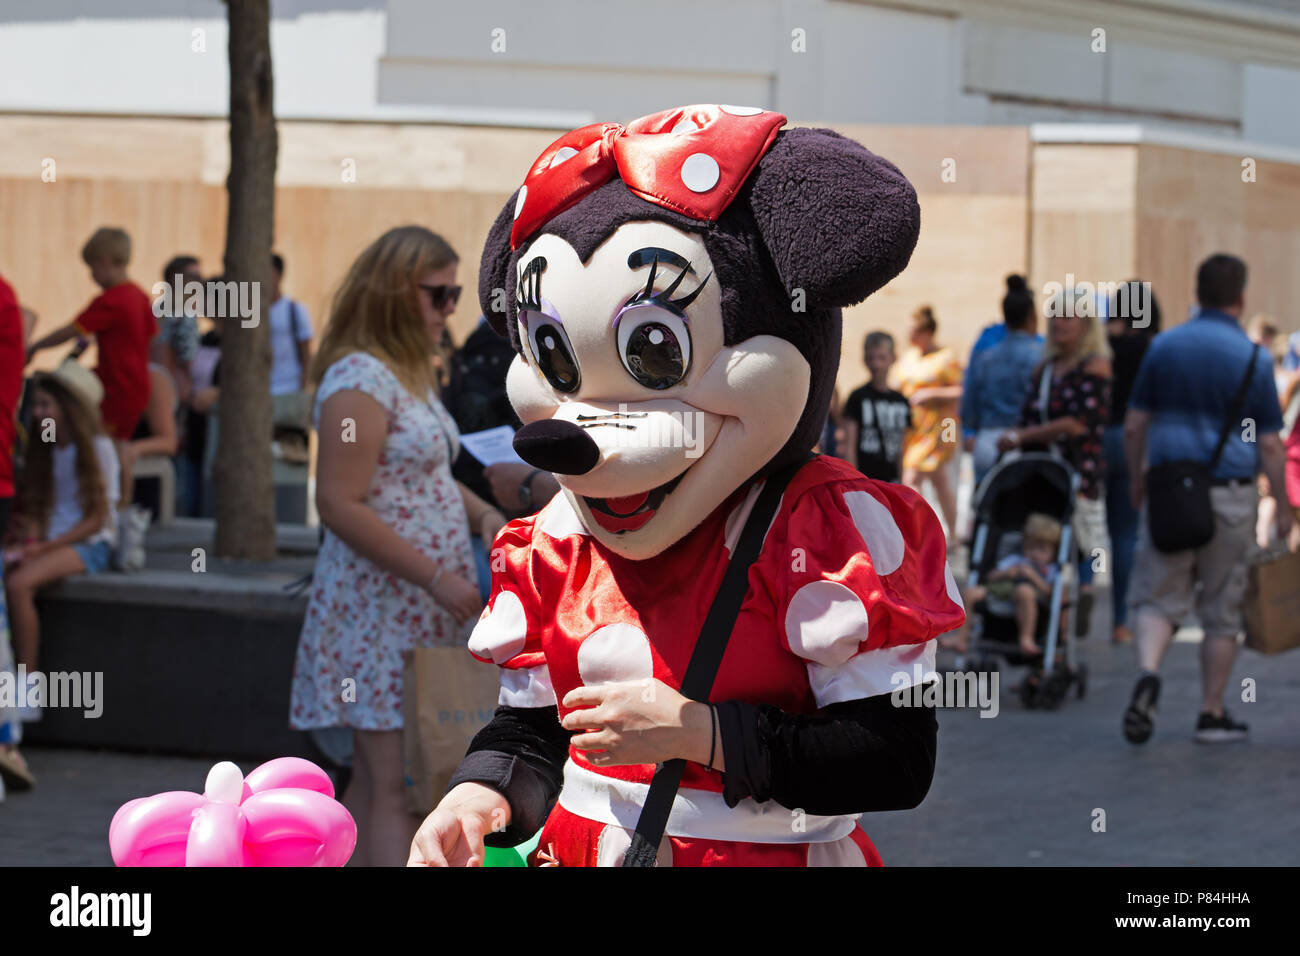 Street intrattenitore vestito come un Minnie Mouse vendere Funny shaped balloons al pubblico in Liverpool Regno Unito. Foto Stock